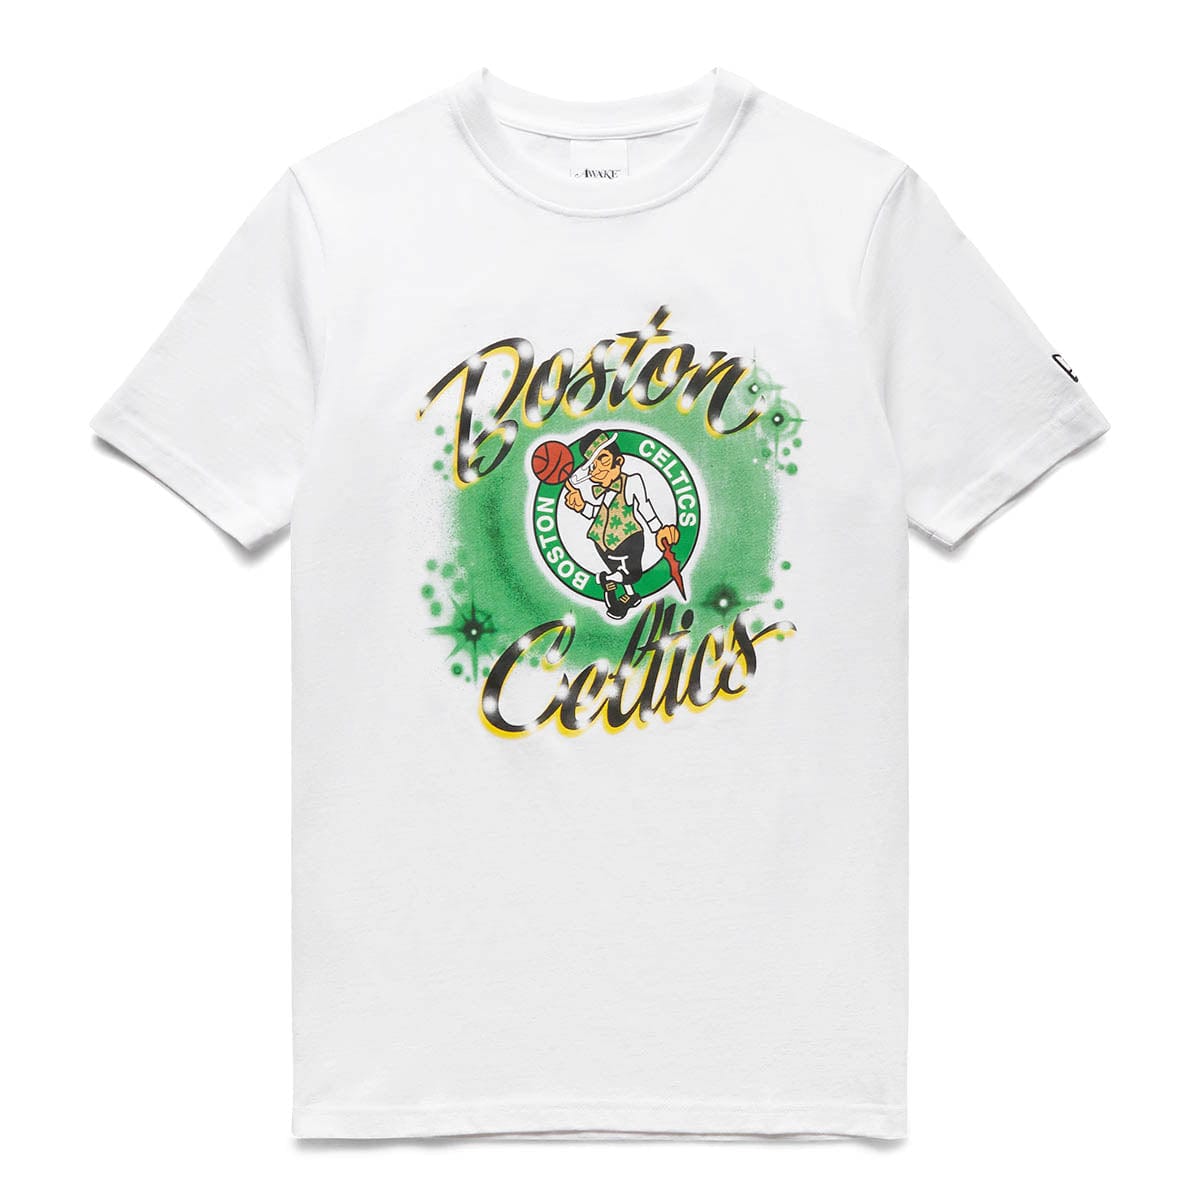 new era boston celtics t shirt